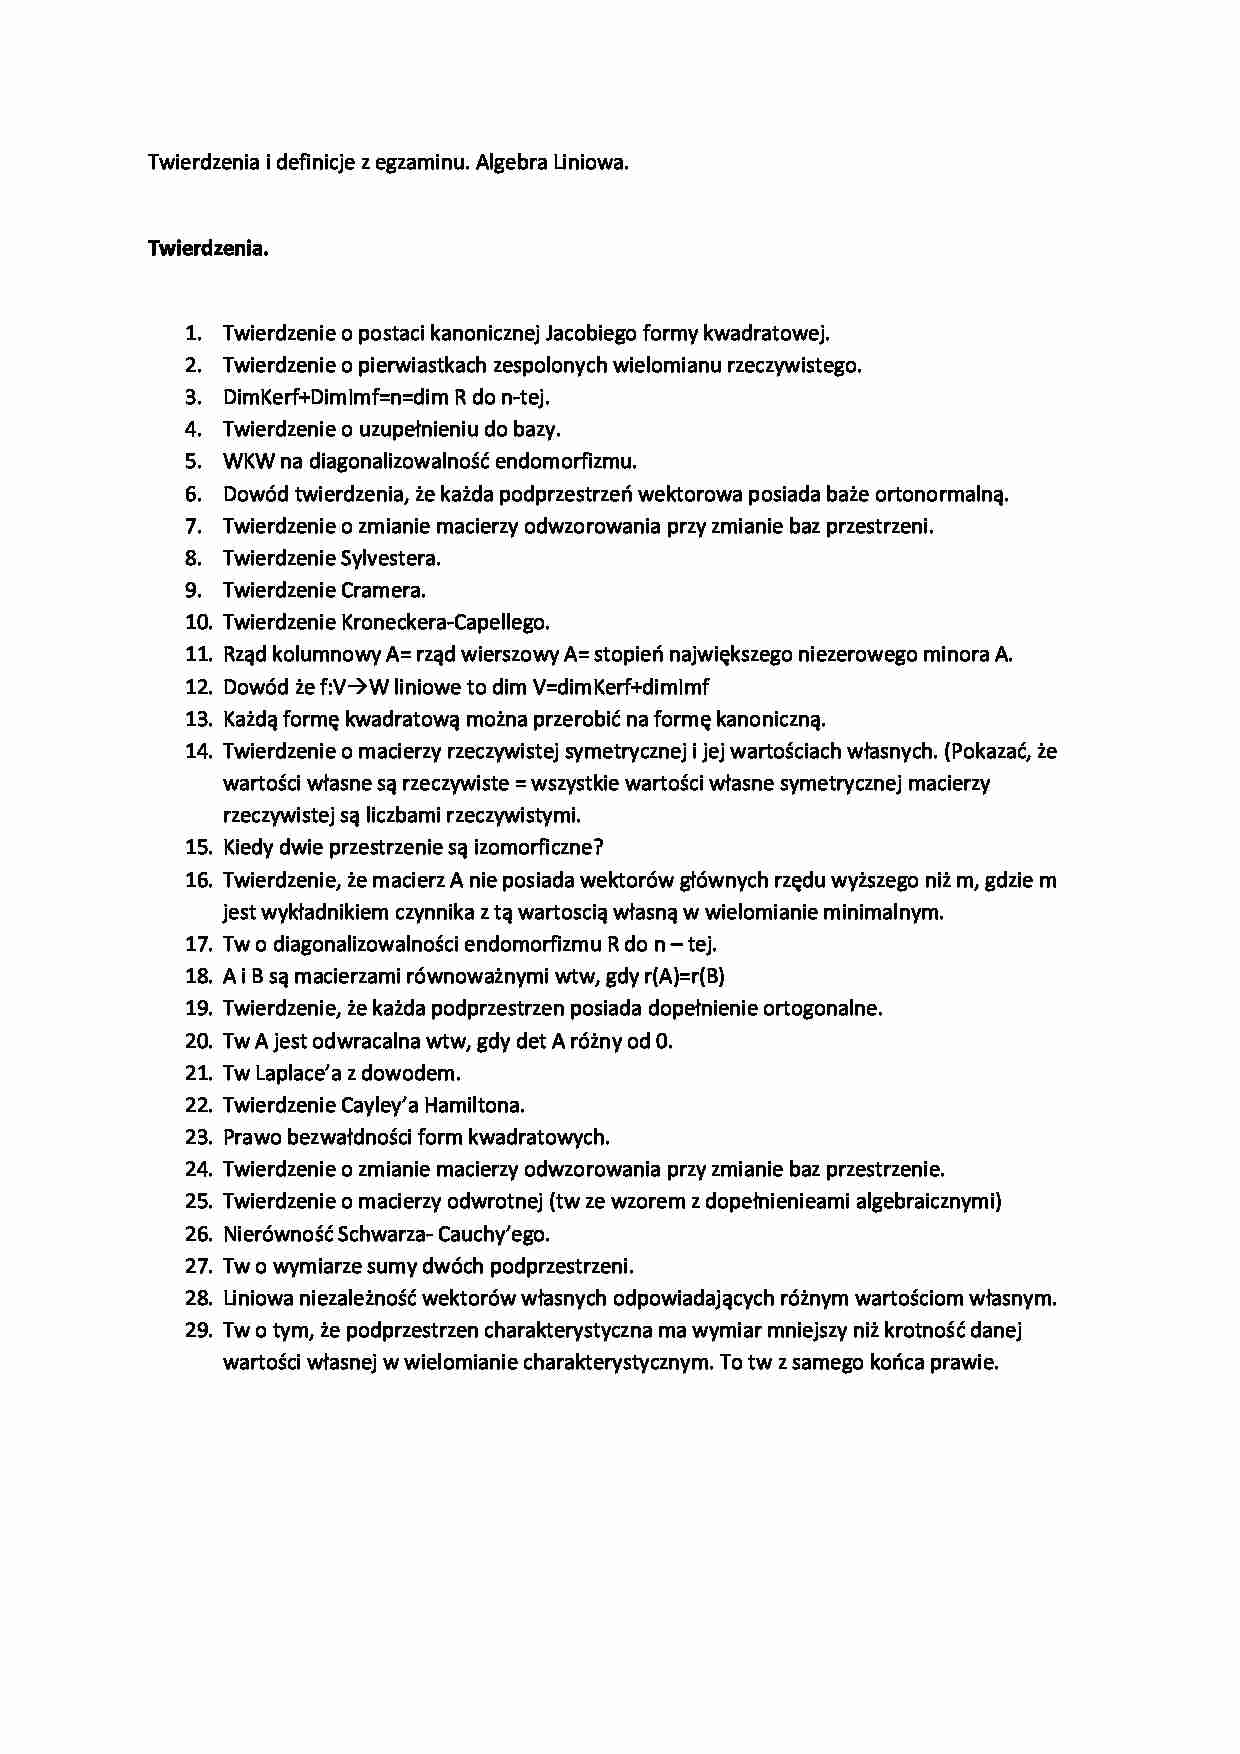 Twierdzenia i definicje z egzaminu - strona 1